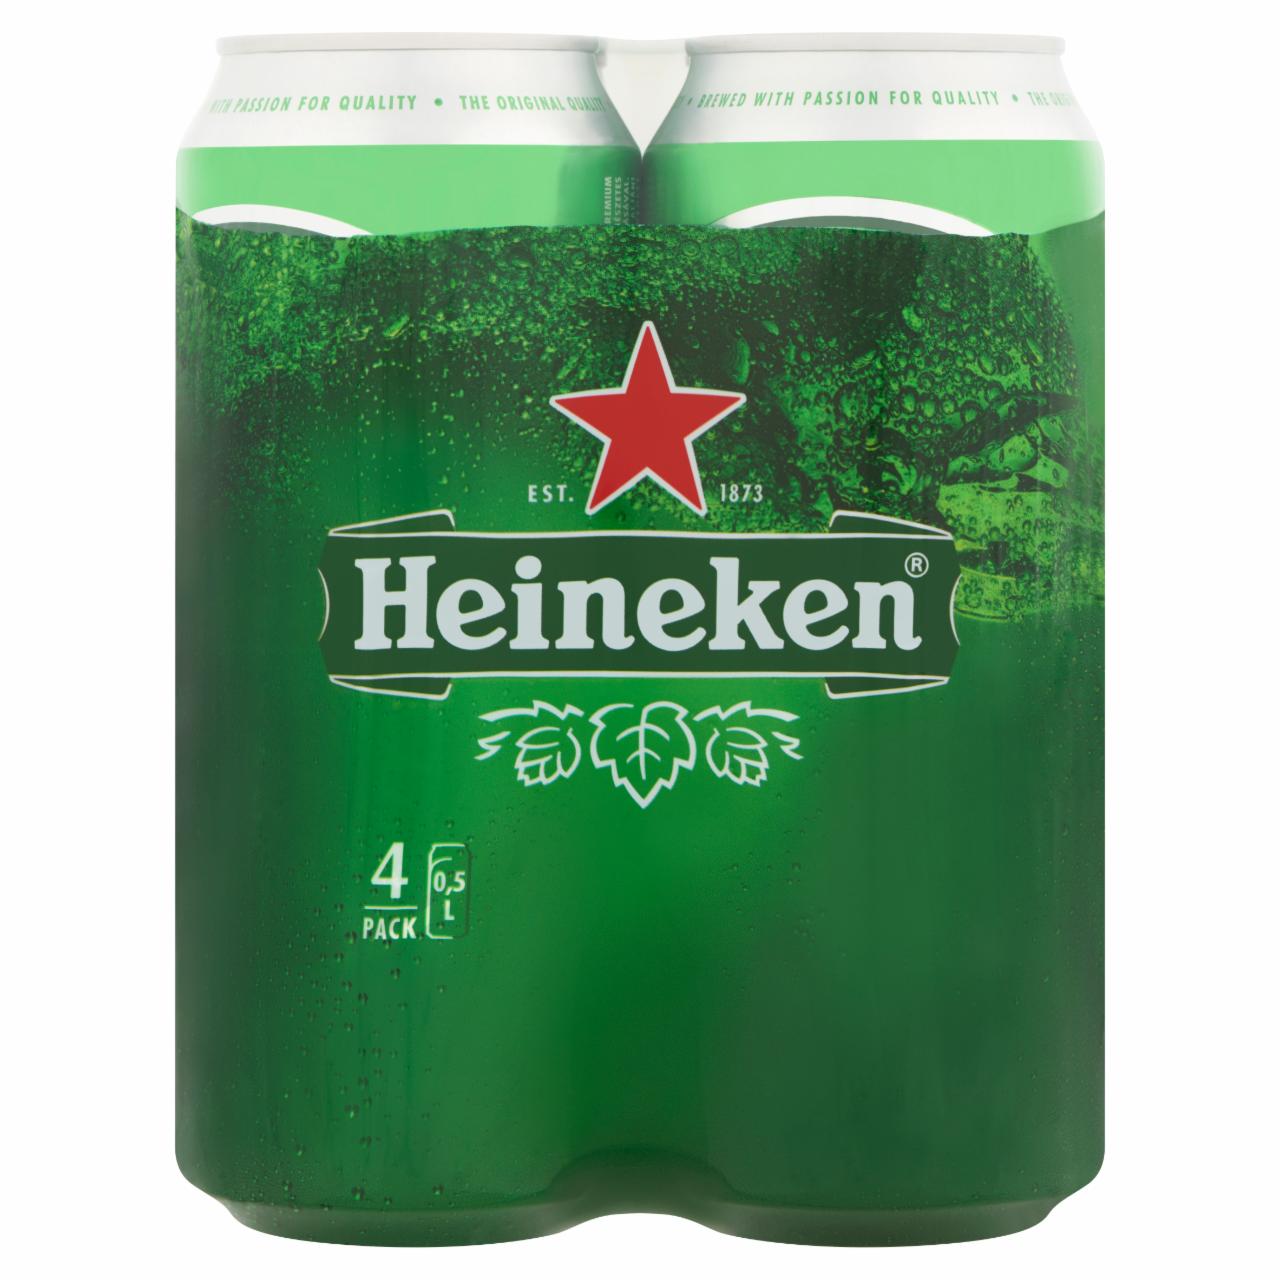 Képek - Heineken minőségi világos sör 5% 4 x 0,5 l doboz